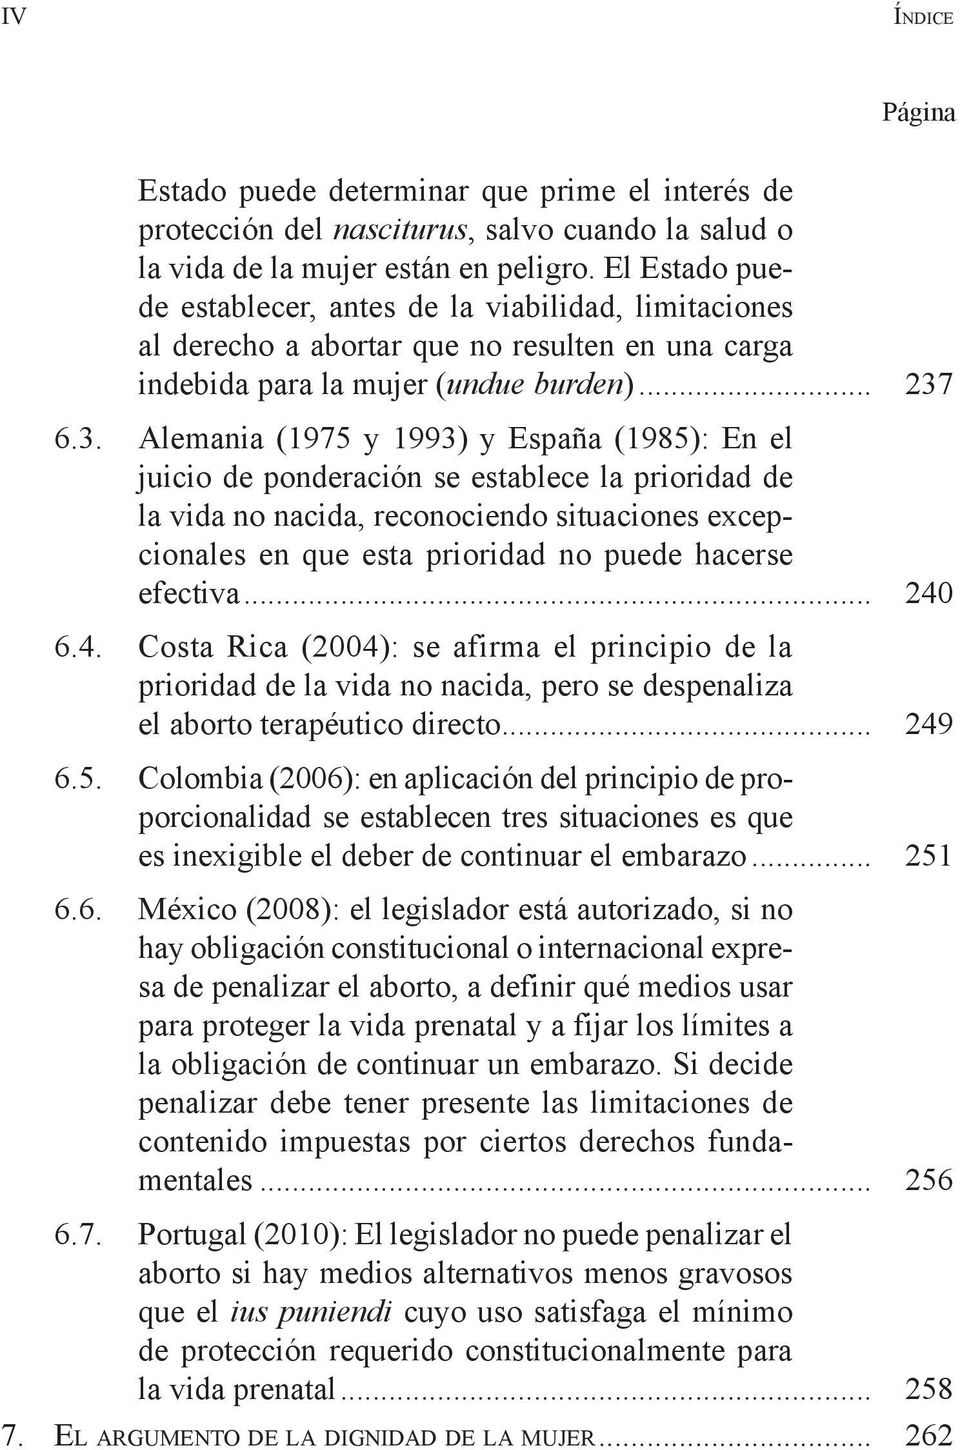 6.3. Alemania (1975 y 1993) y España (1985): En el juicio de ponderación se establece la prioridad de la vida no nacida, reconociendo situaciones excepcionales en que esta prioridad no puede hacerse